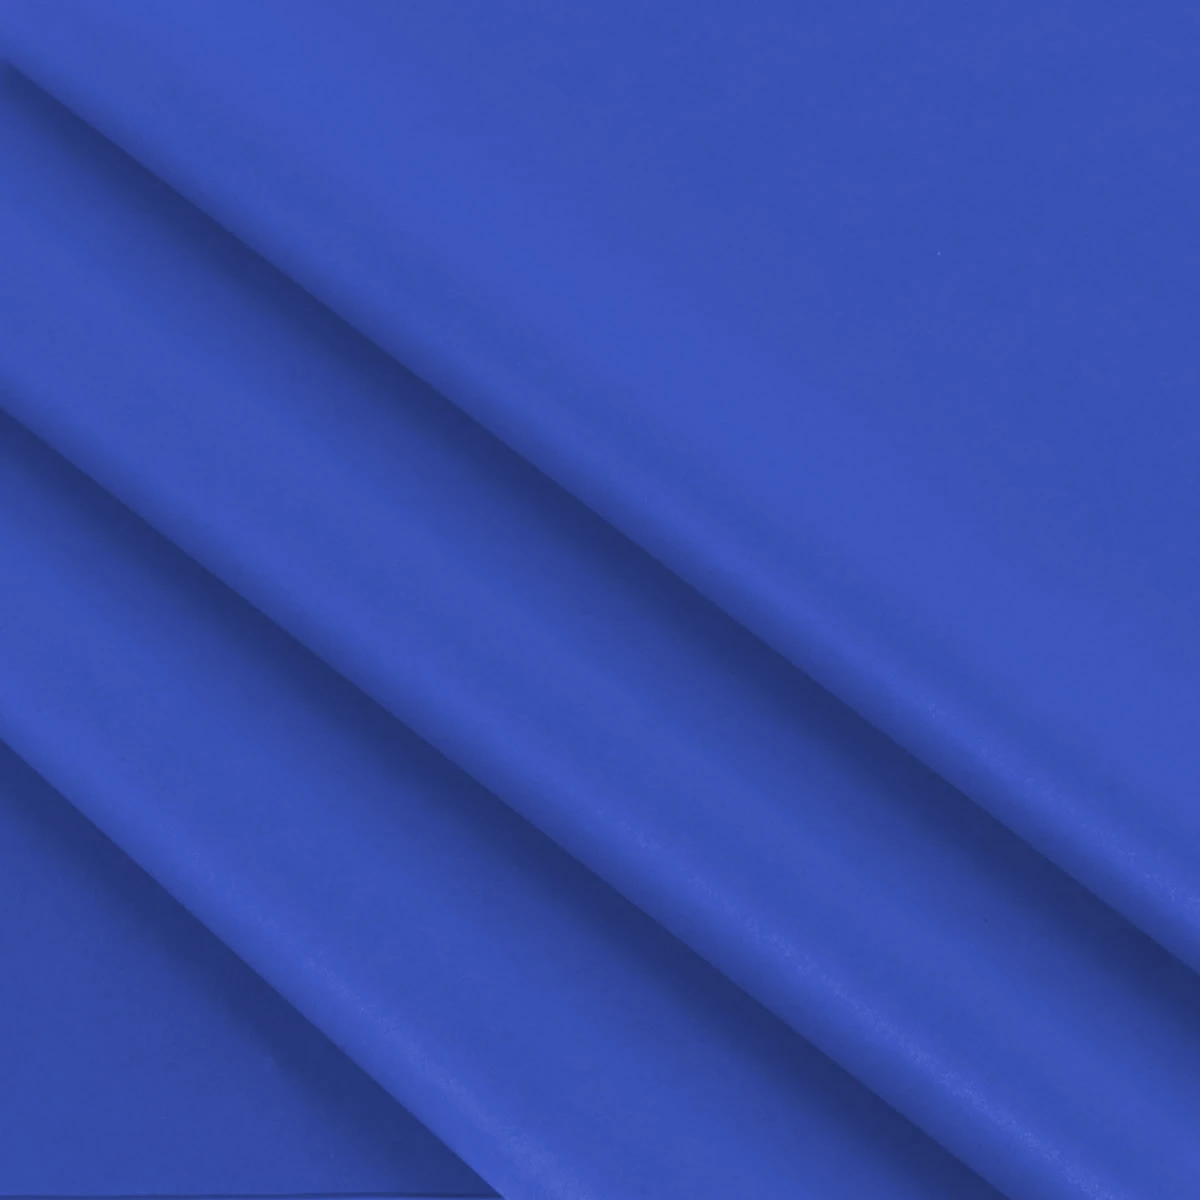 Vloeipapier kobalt blauw 35 x 50 cm (480 vellen)